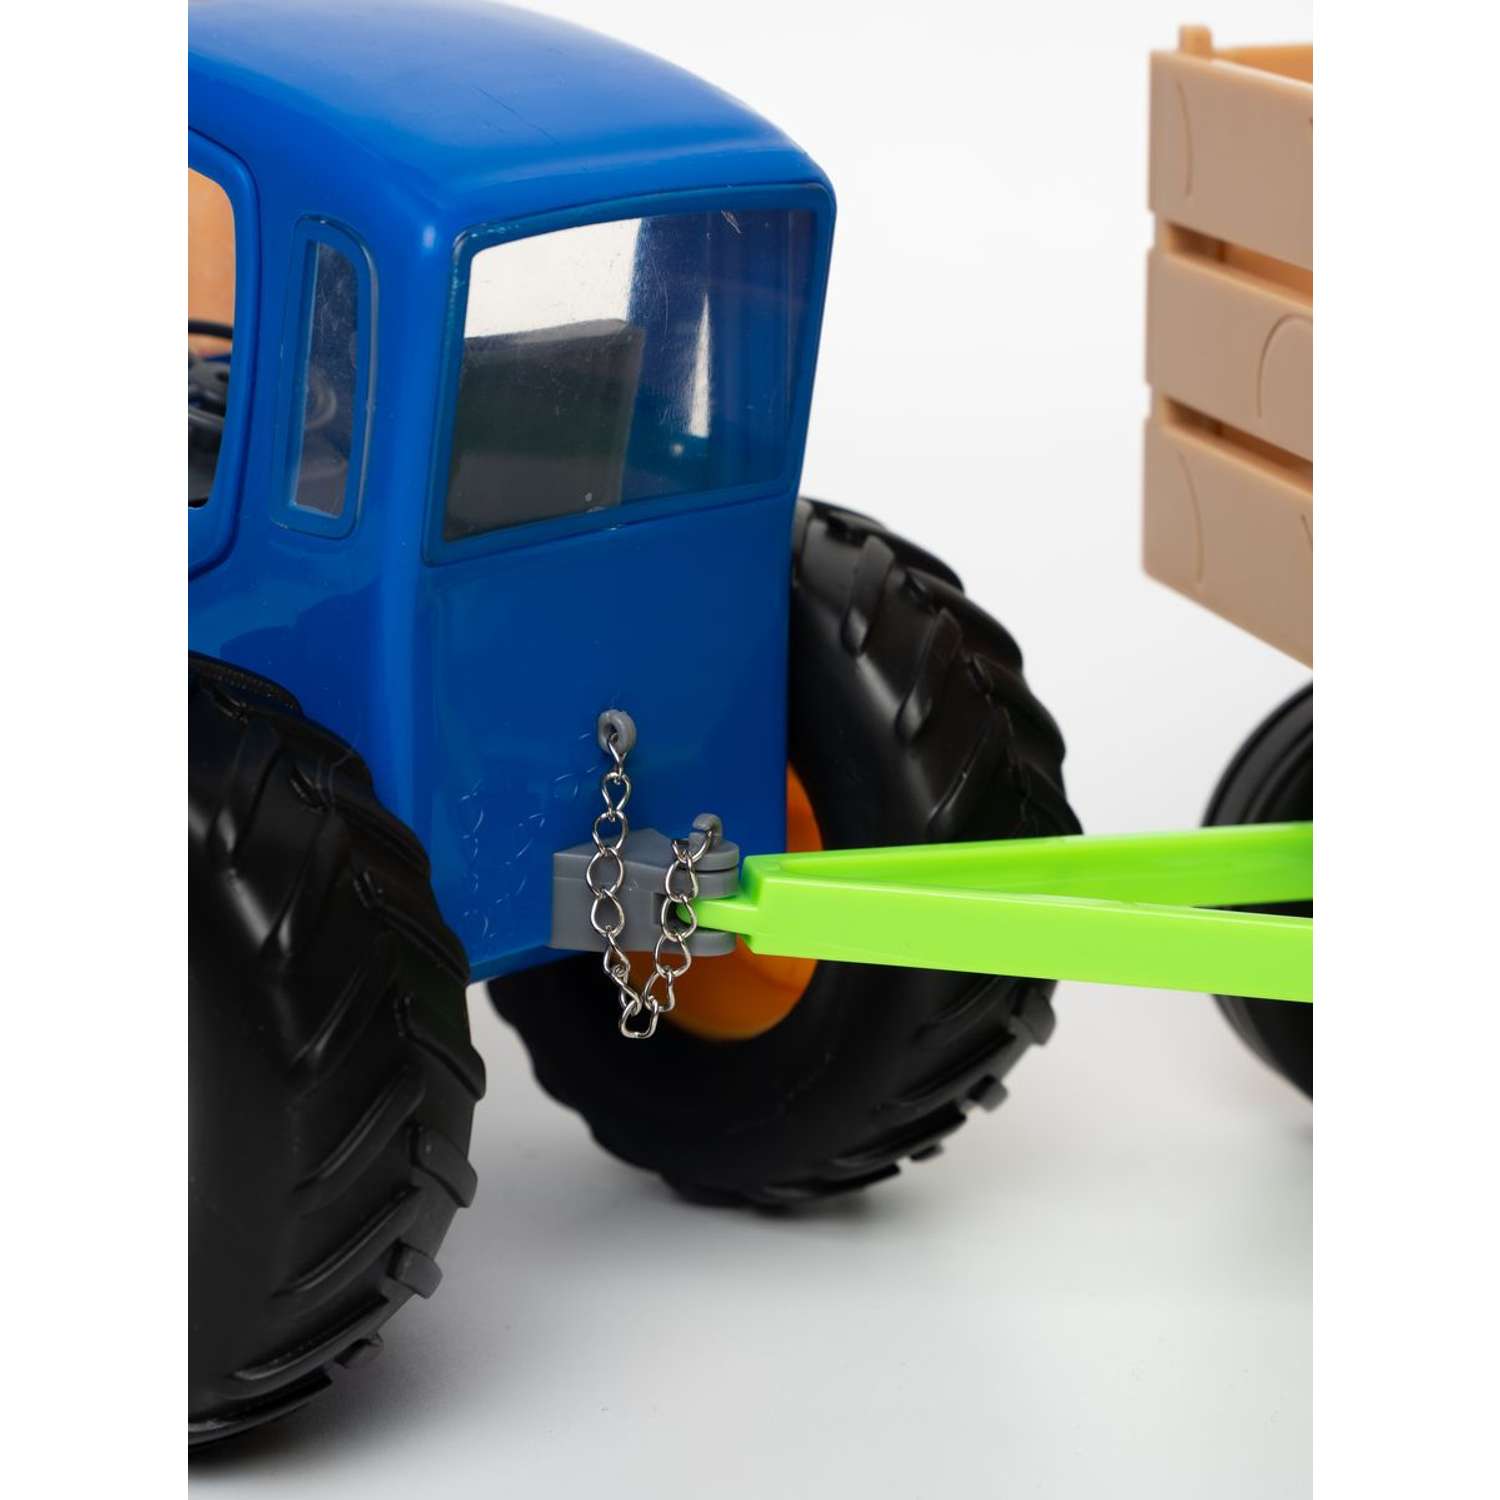 Набор трактор с прицепом 4 в 1 Super01 синий трактор 123-48076 - фото 3